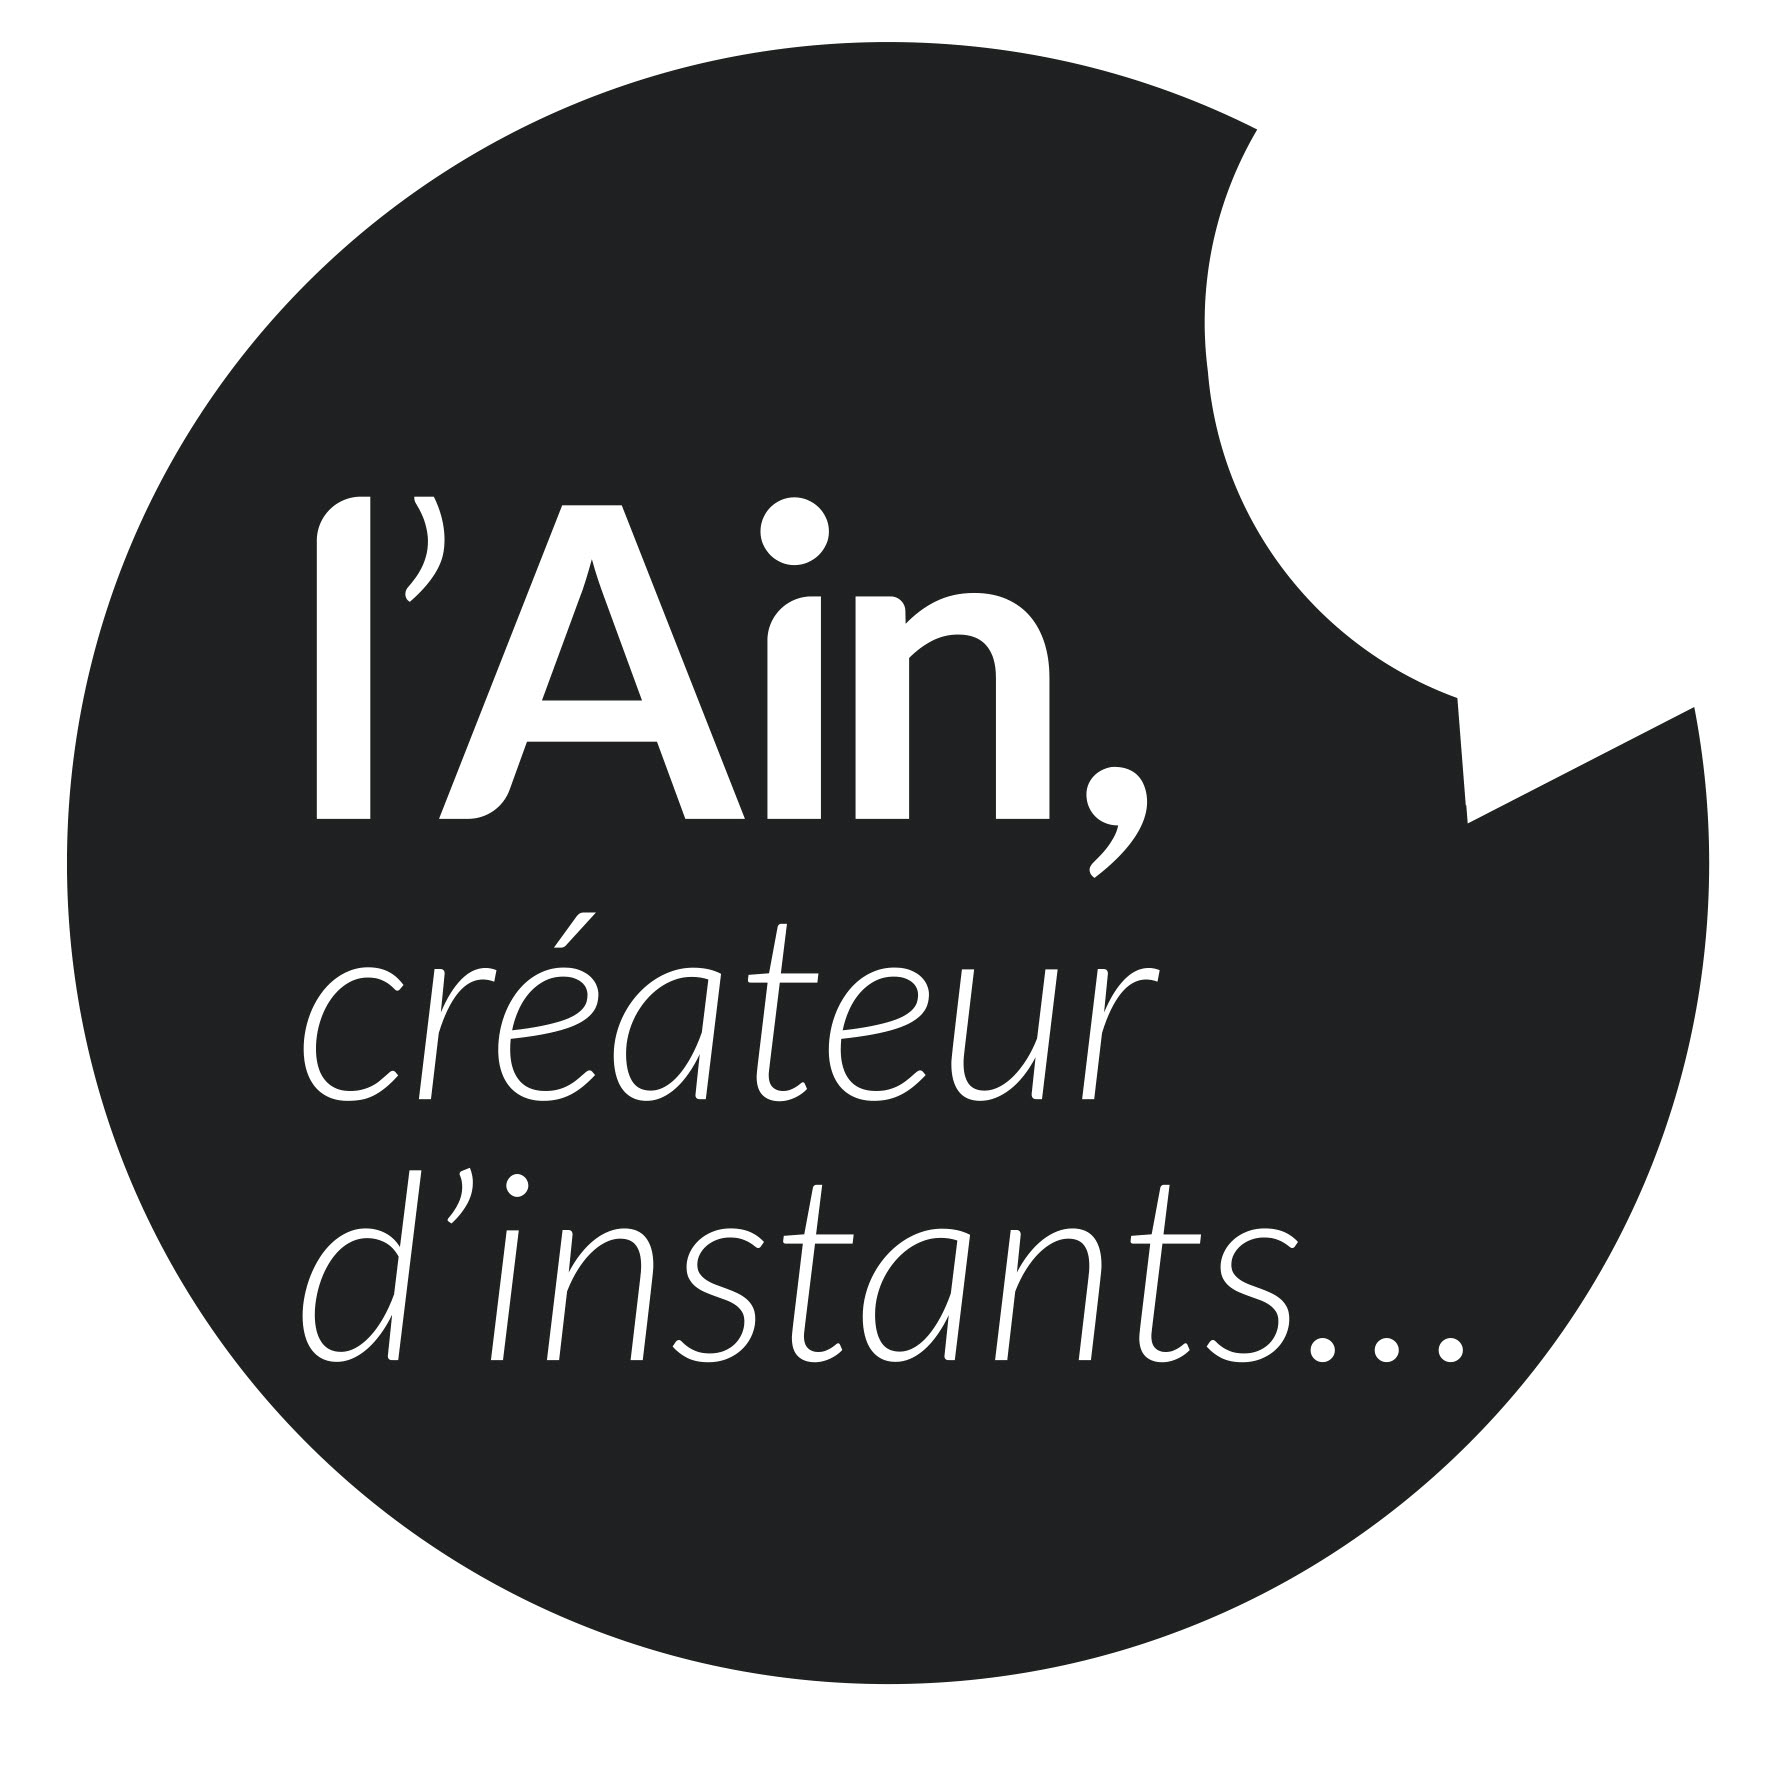 I'Ain, createur d'instants